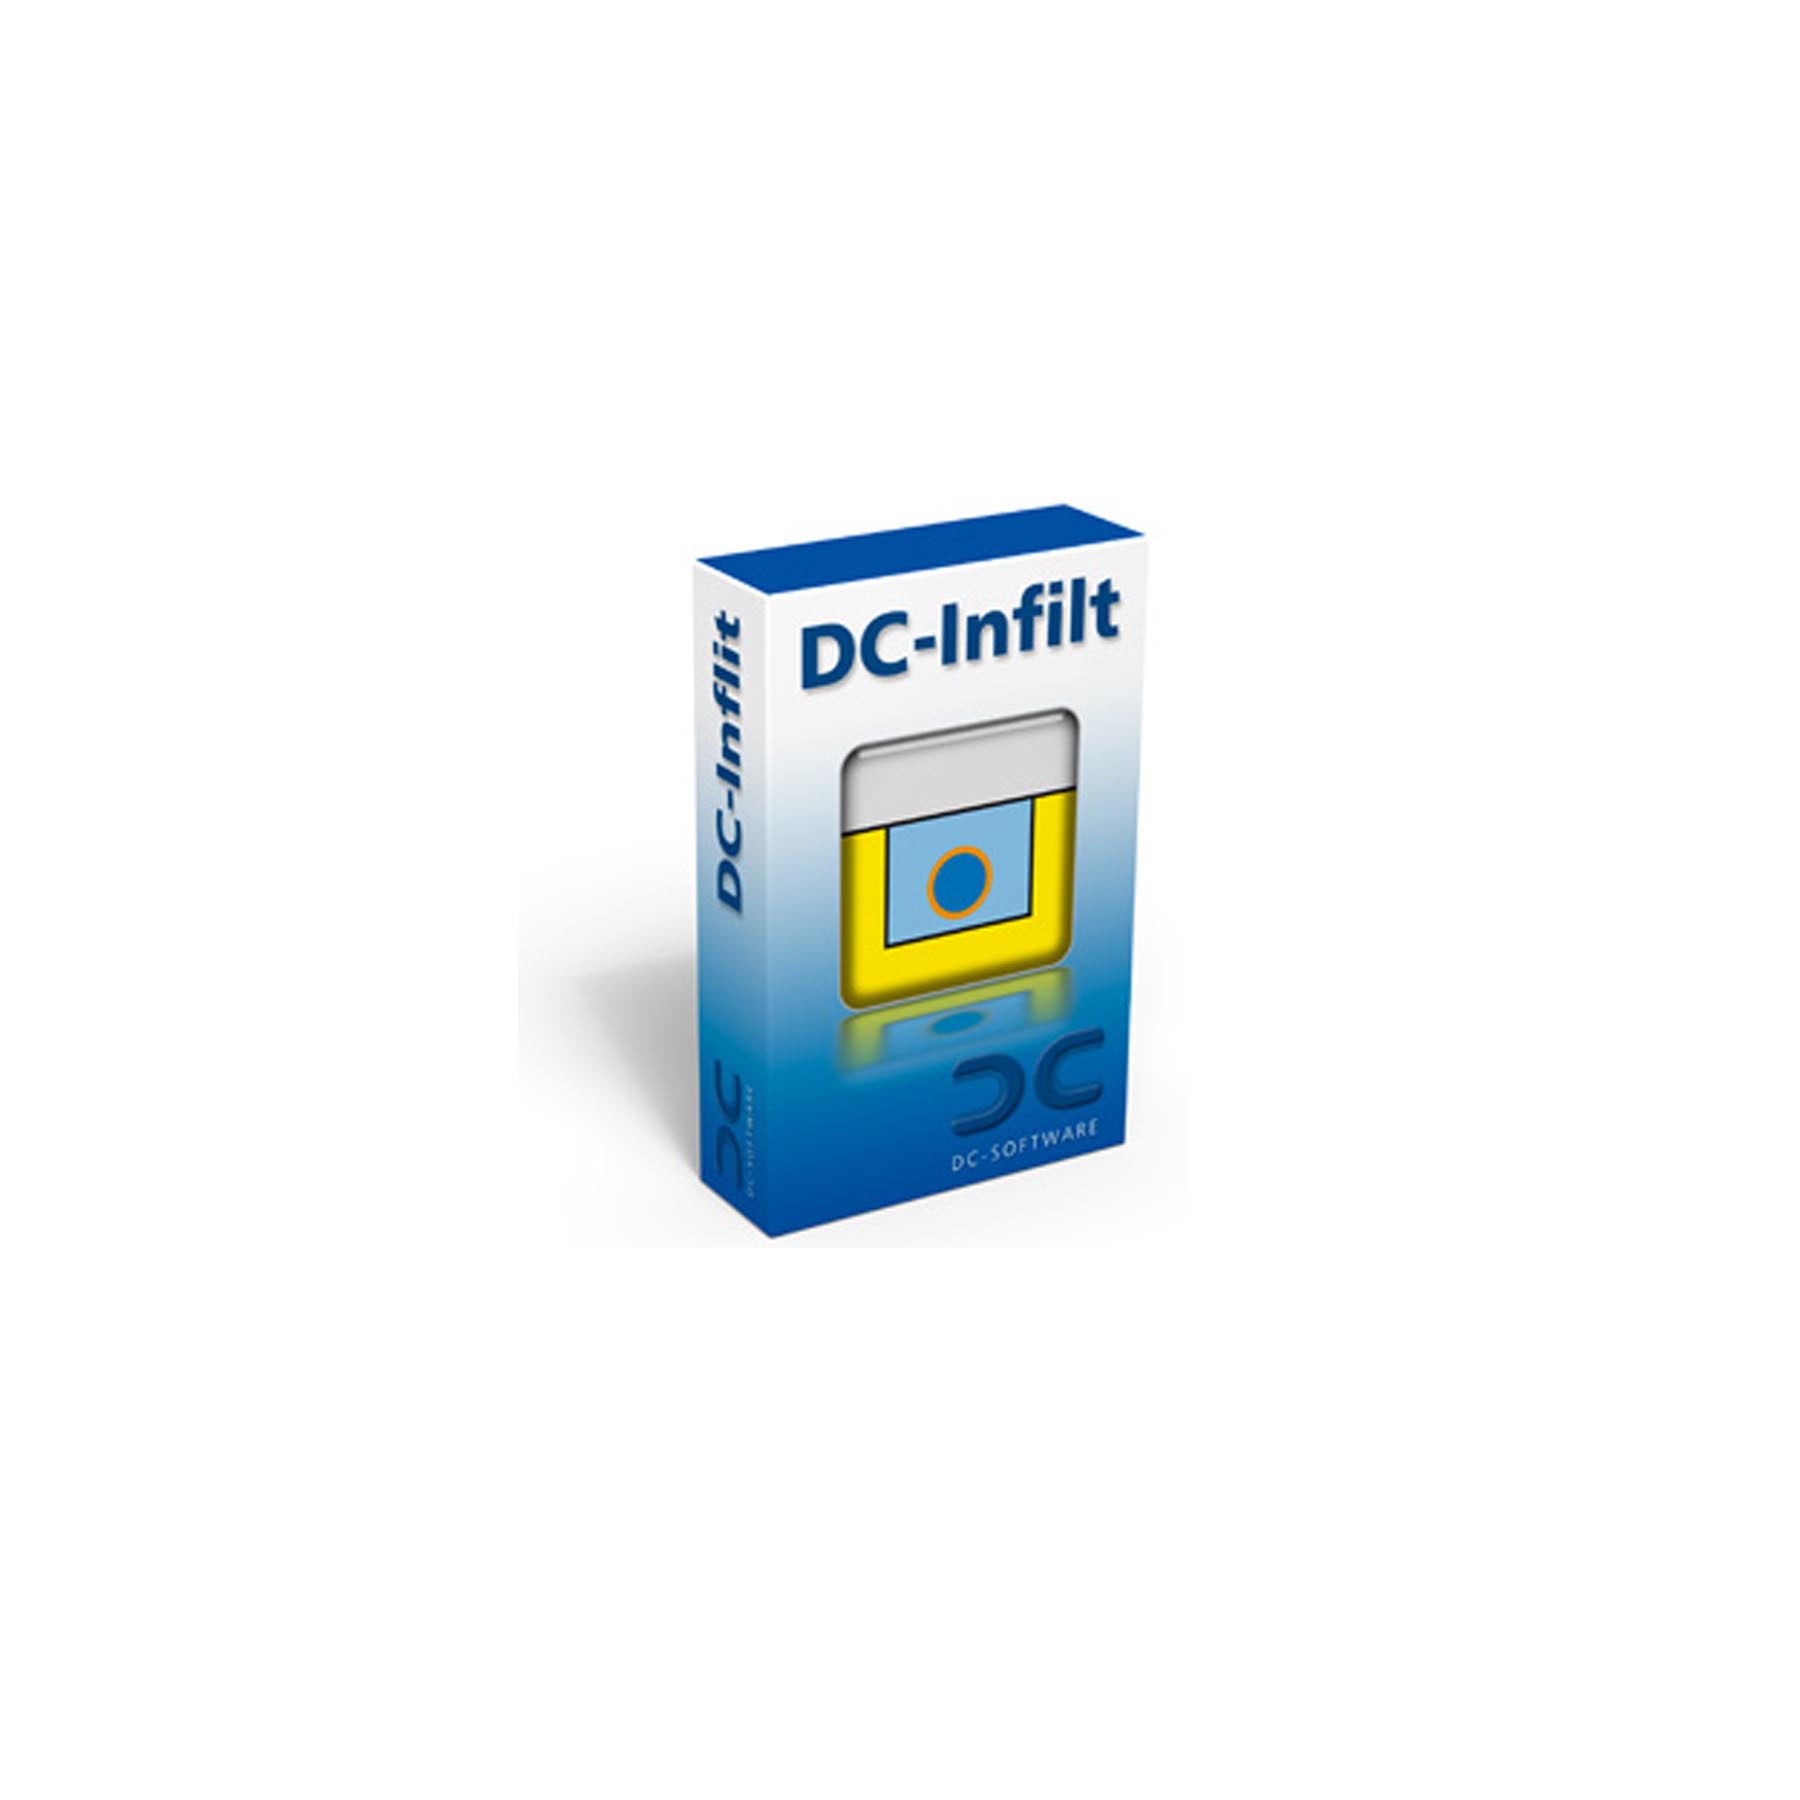 DC-Infilt for Windows